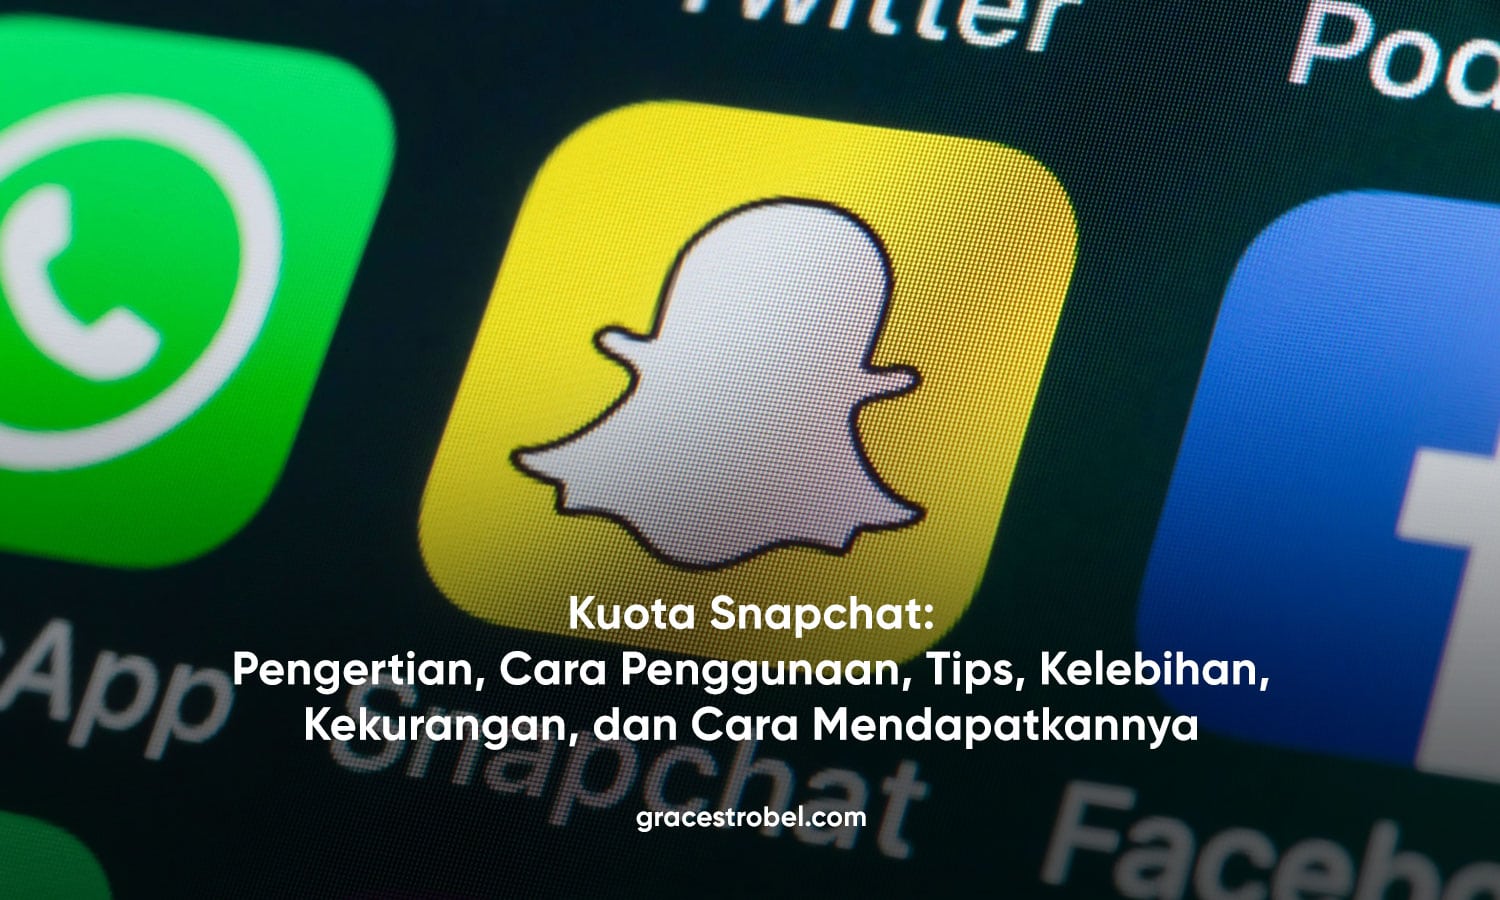 Kuota Snapchat: Pengertian, Cara Penggunaan, Tips, Kelebihan, Kekurangan, dan Cara Mendapatkannya